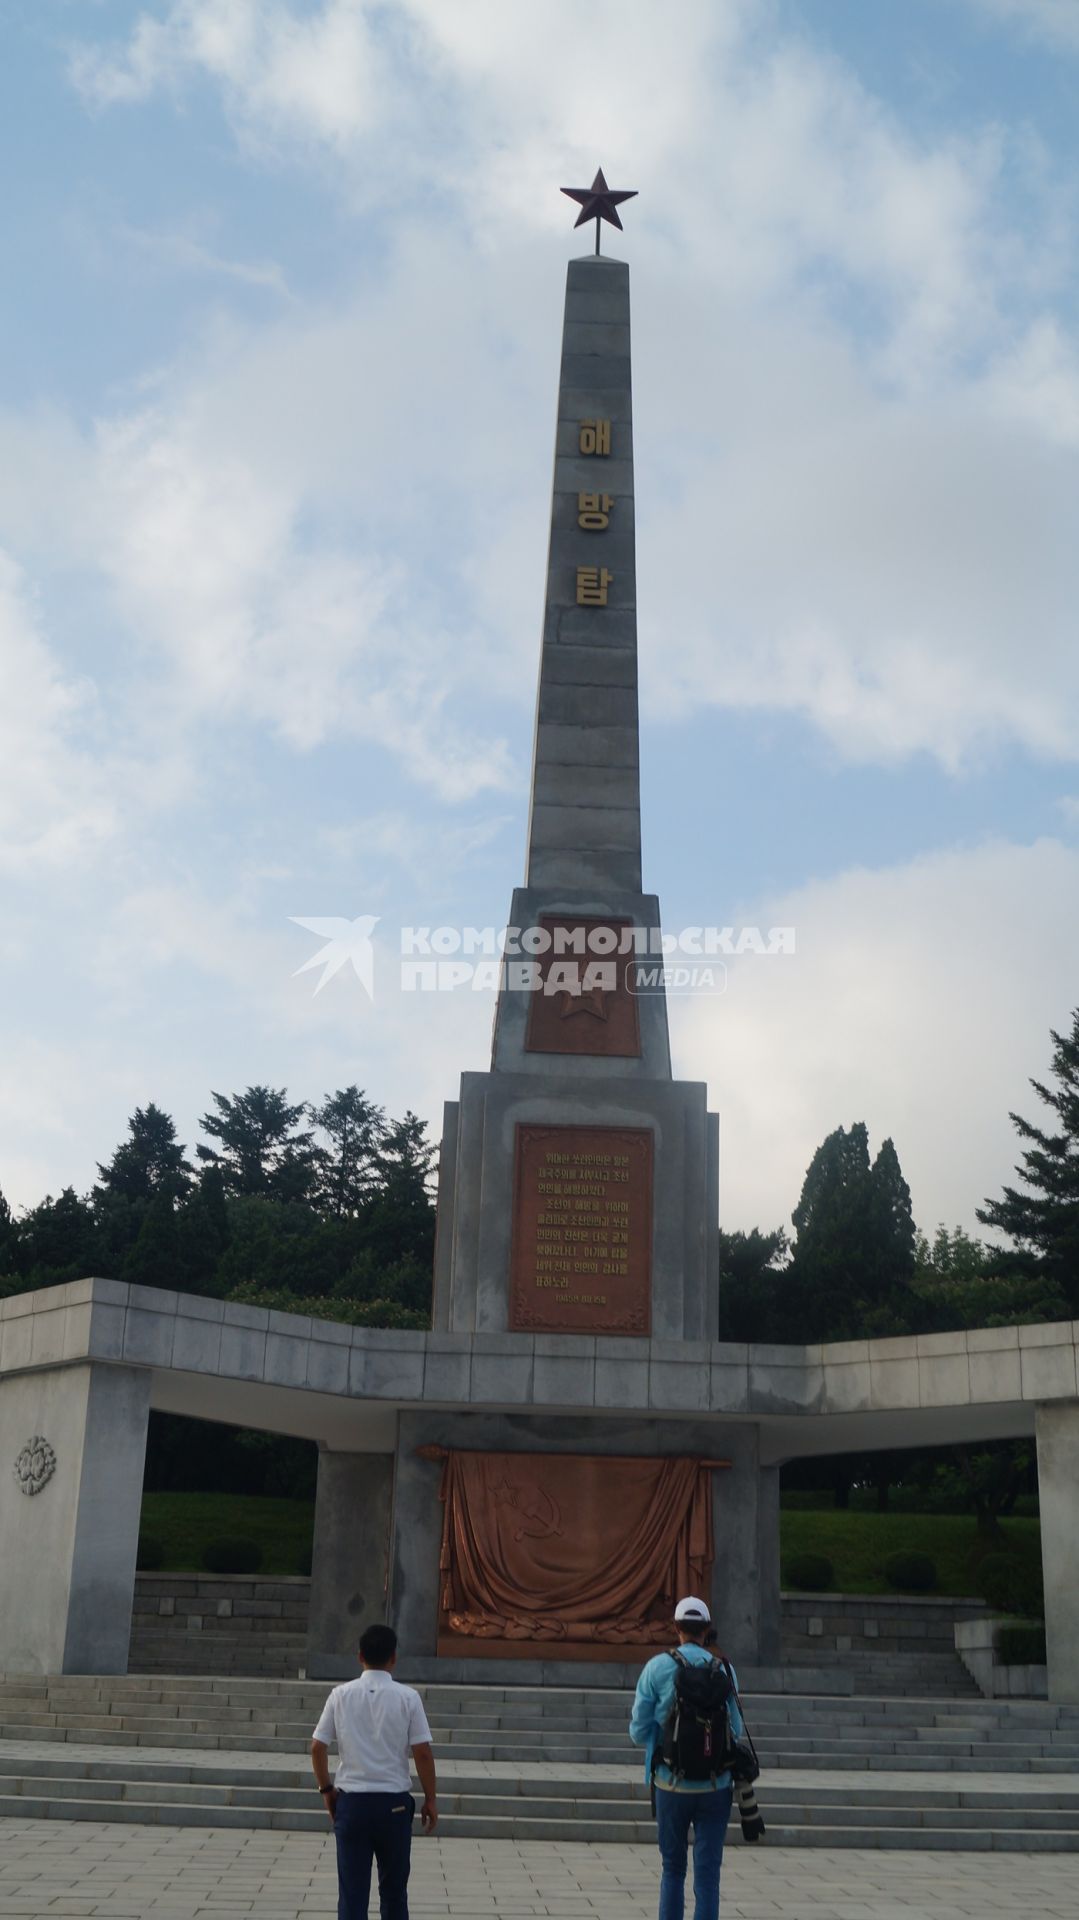 КНДР, Пхеньян. Памятник советским воинам-освободителям.